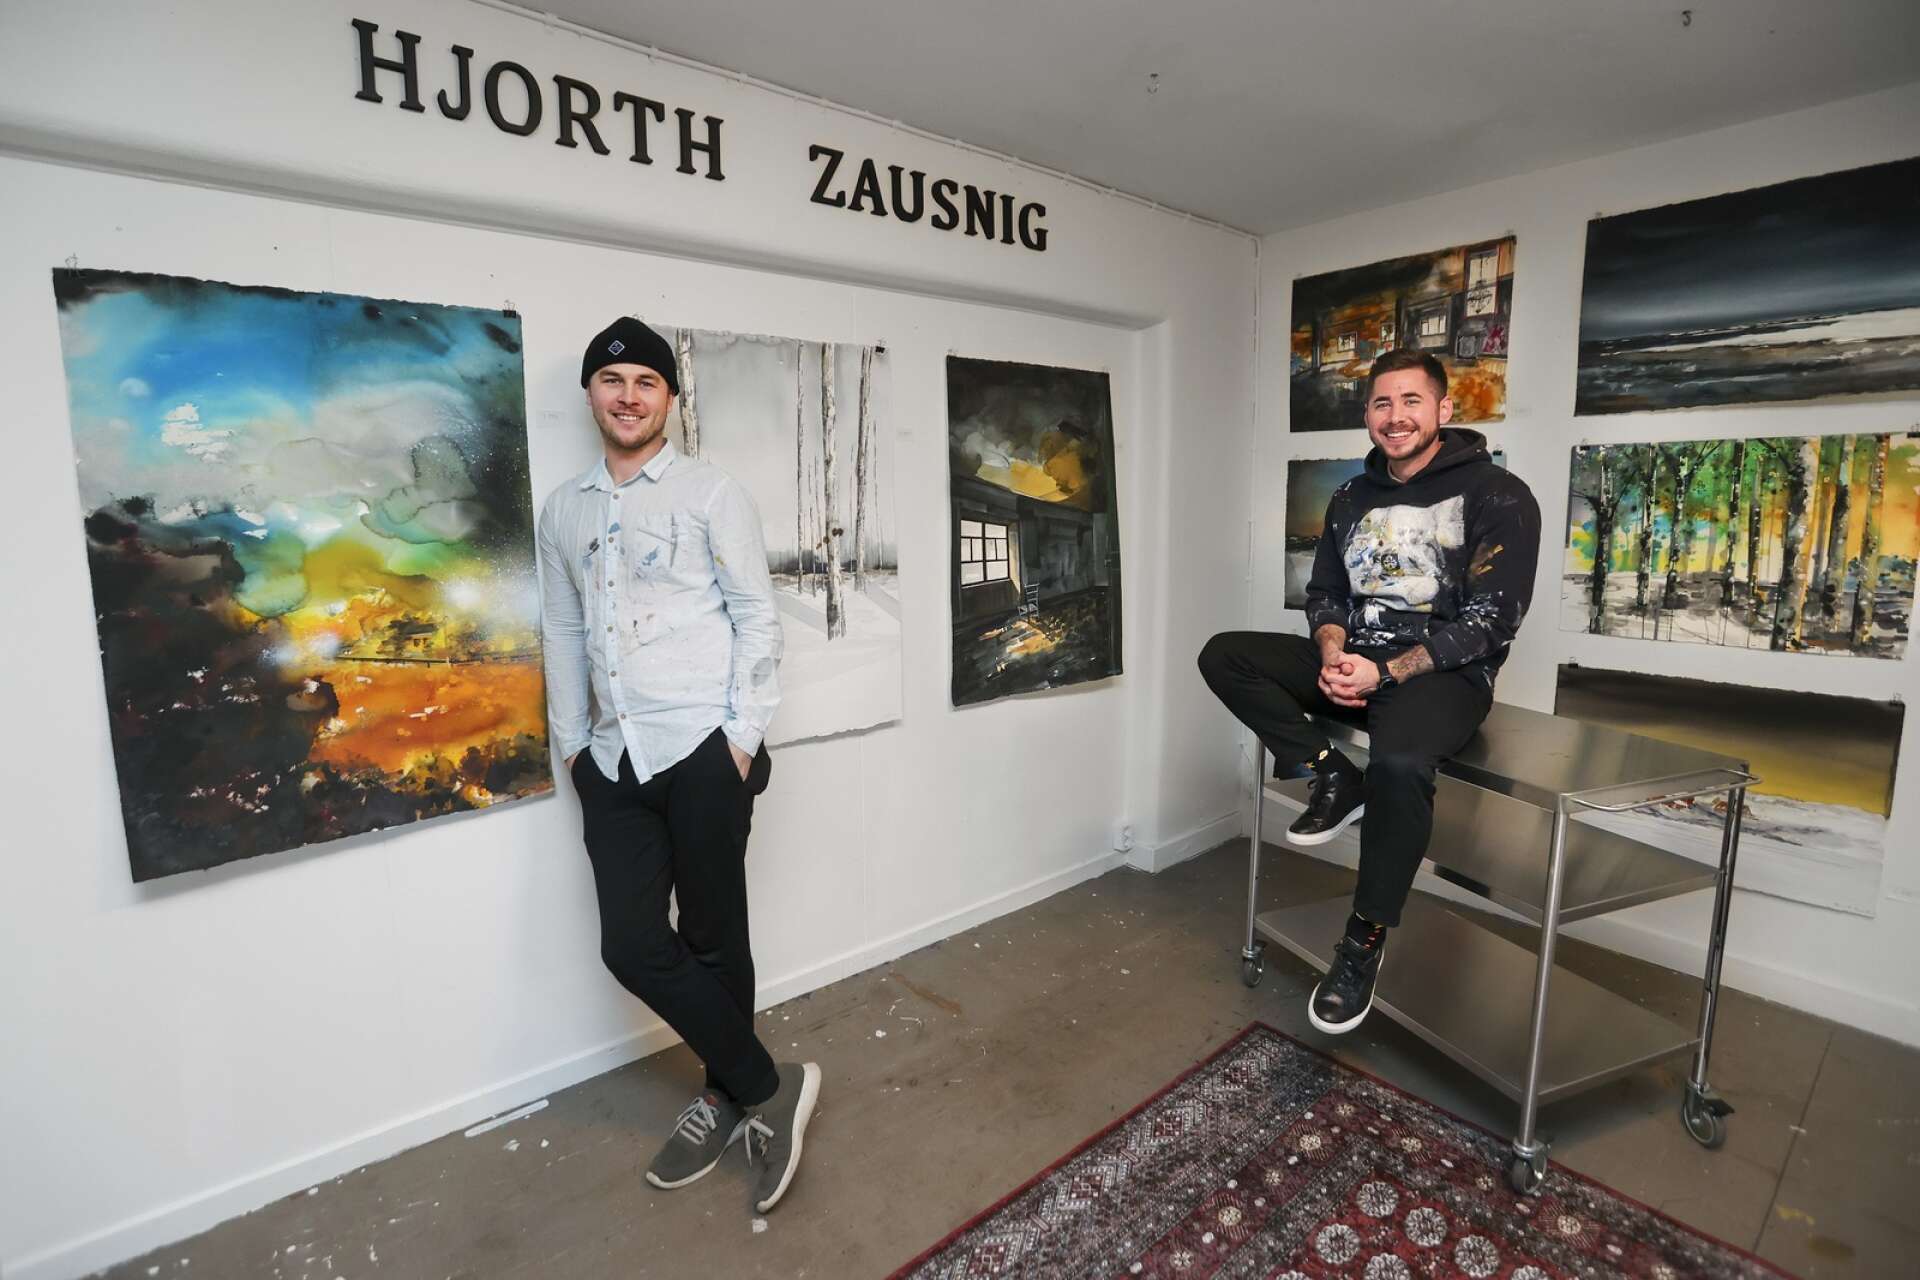 Konstnärerna Erik Hjorth och Daniel Zausnig har ett showroom i sin ateljé, men kommer inte att ha någon galleriverksamhet.